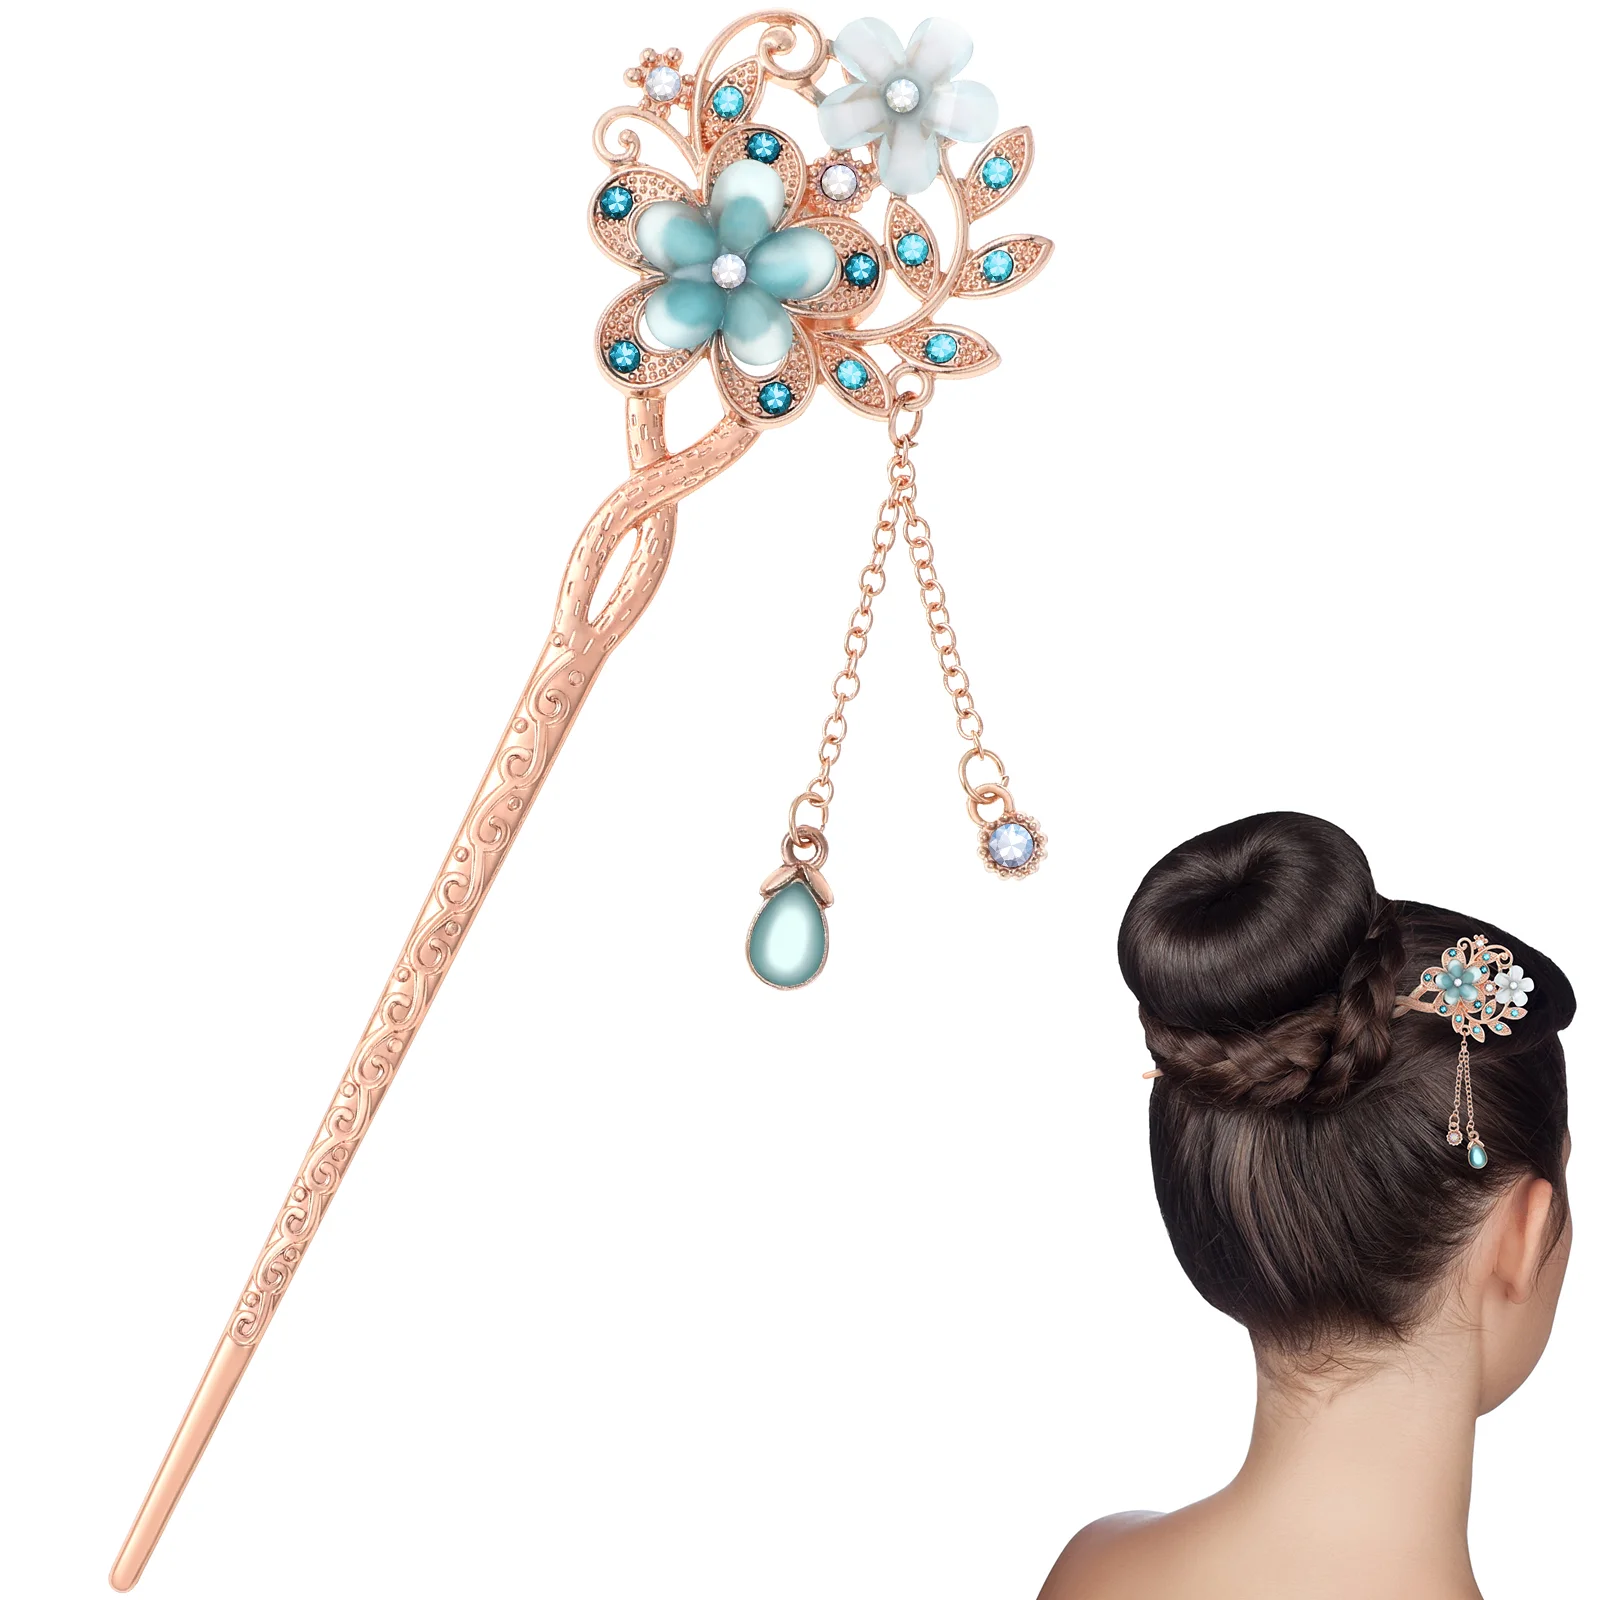 

Vintage Hairpin Sticks Women Wedding Headpiece Bride Accessories Chinese Hairpins Miss